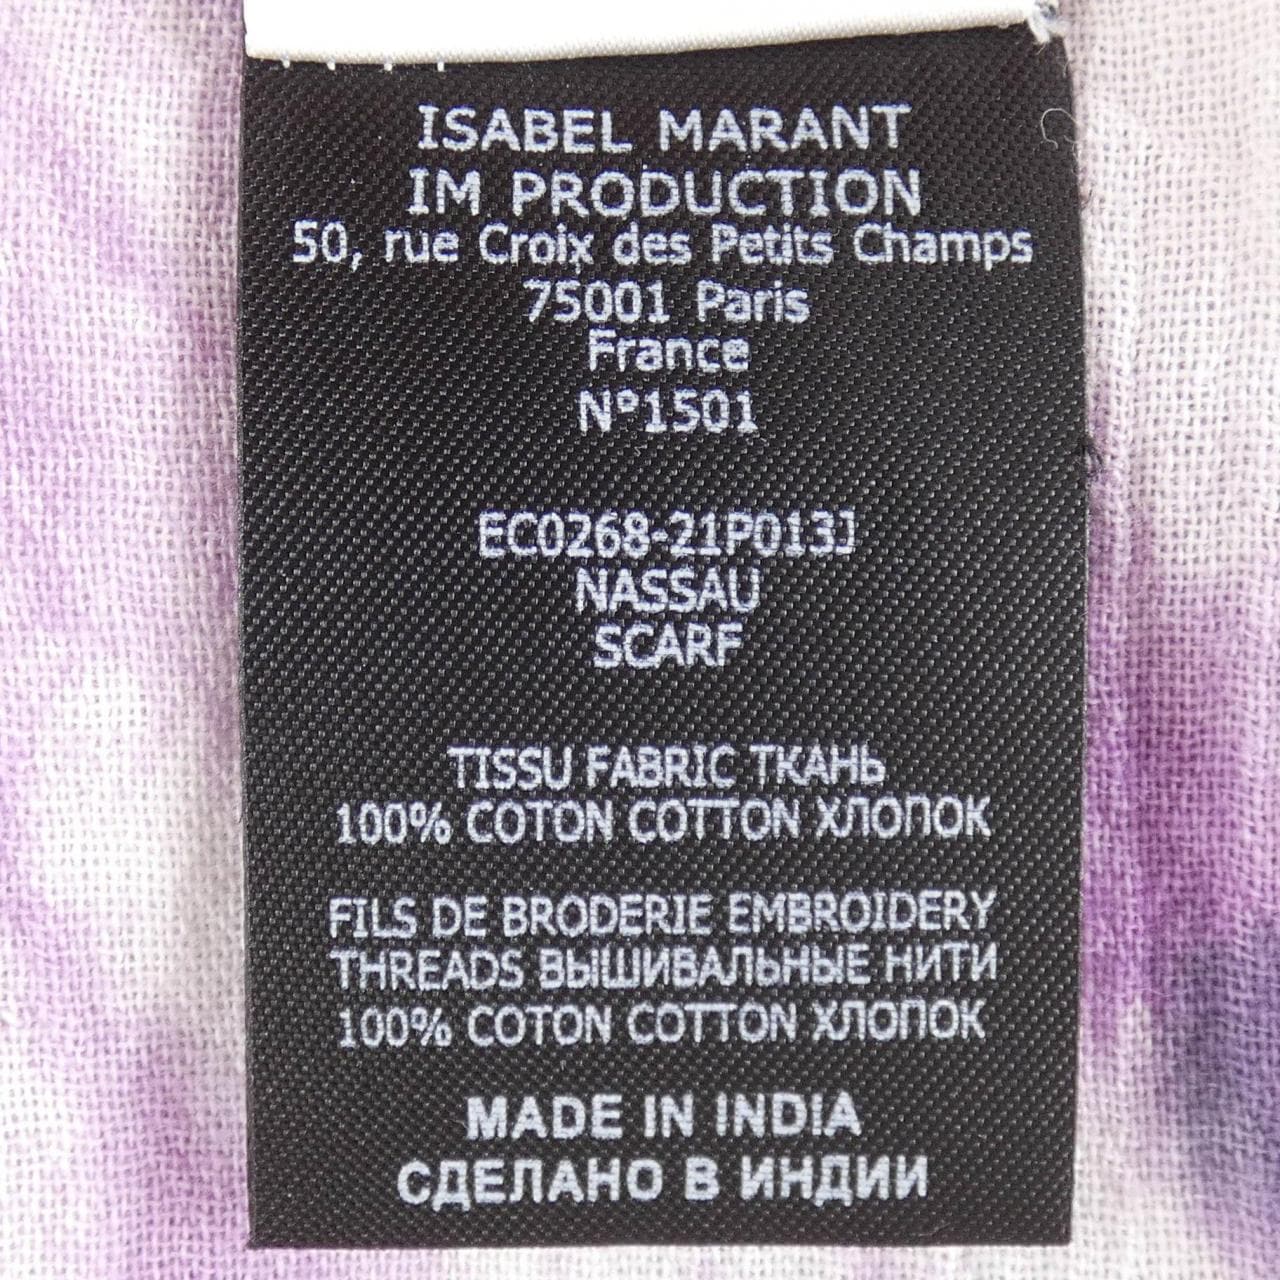 ISABEL MARANT瑪蘭圍巾